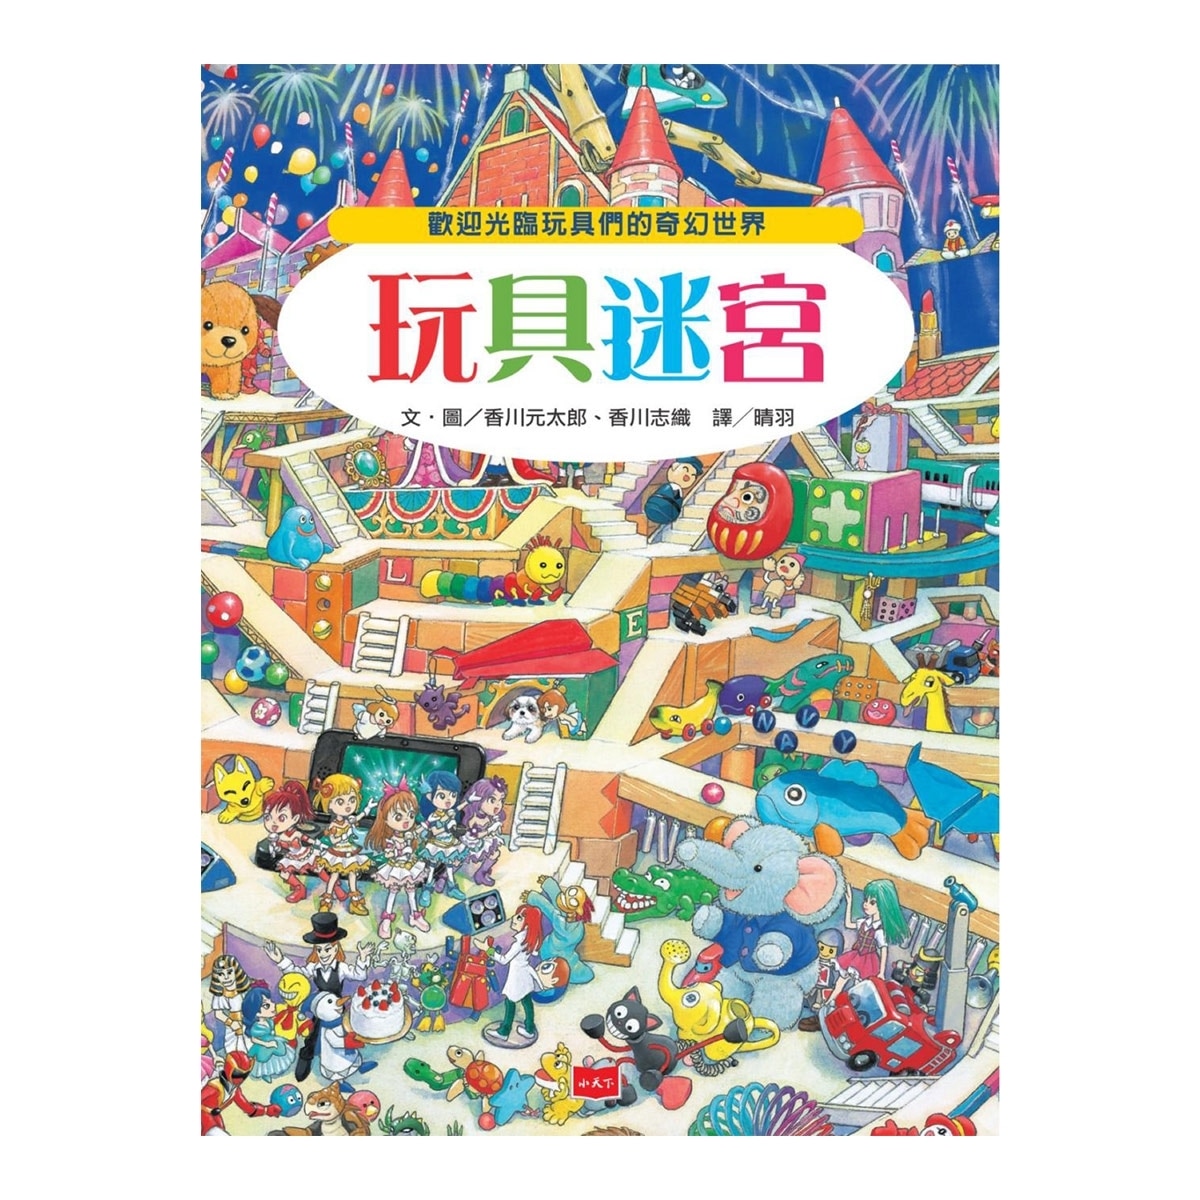 知識大迷宮套書10-12 : 玩具+妖怪+水世界迷宮(3冊)